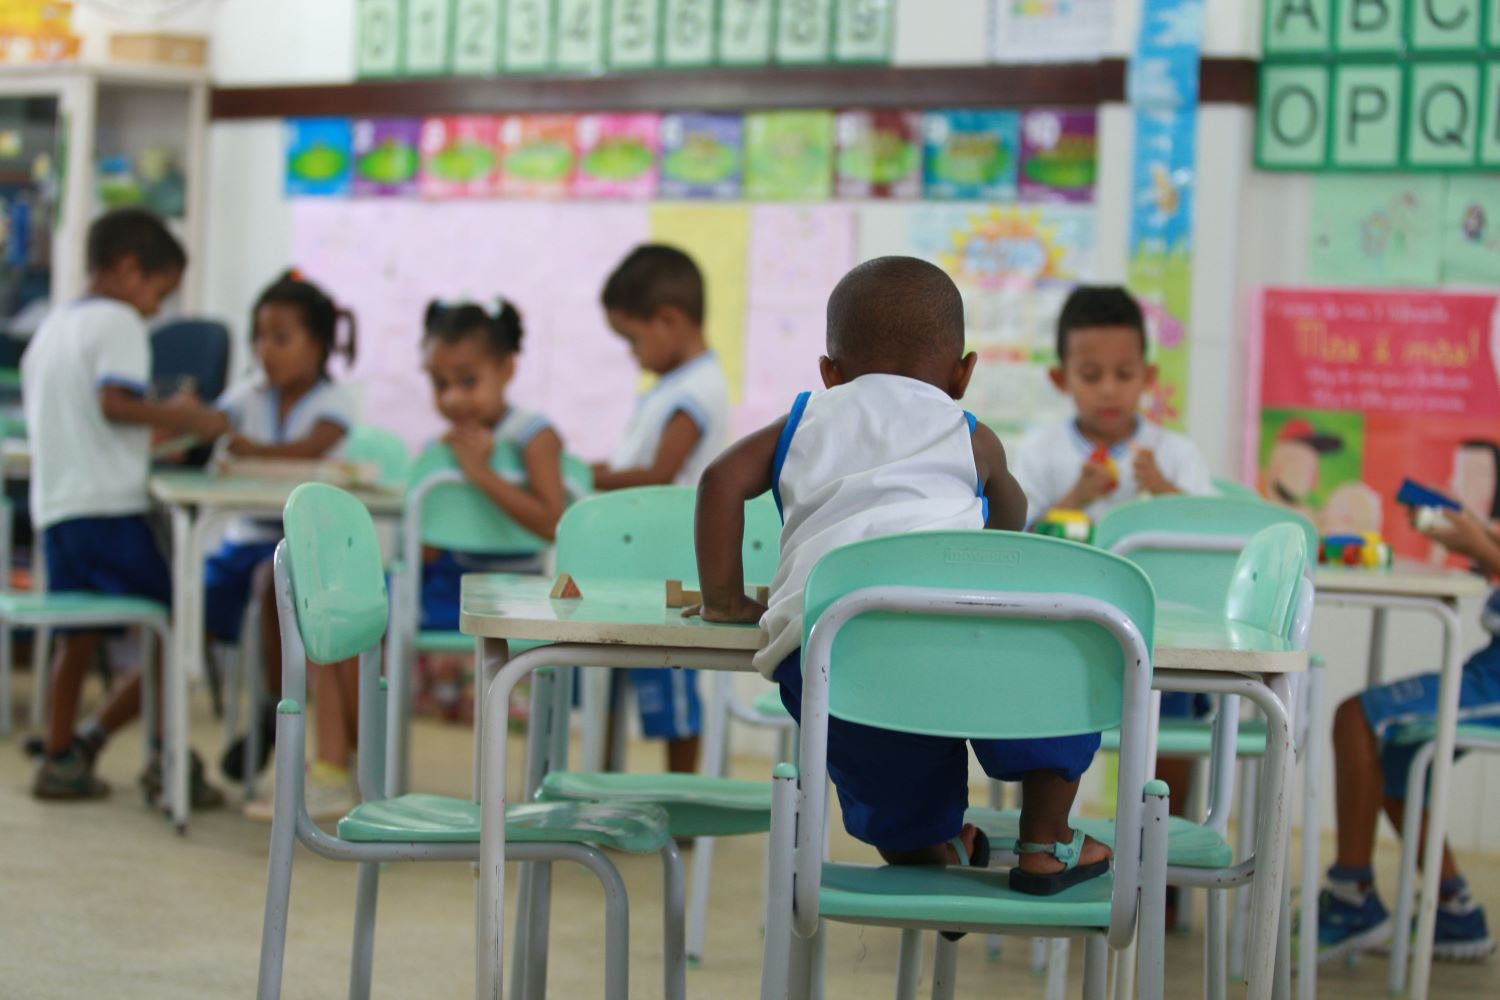 children in public school classroom